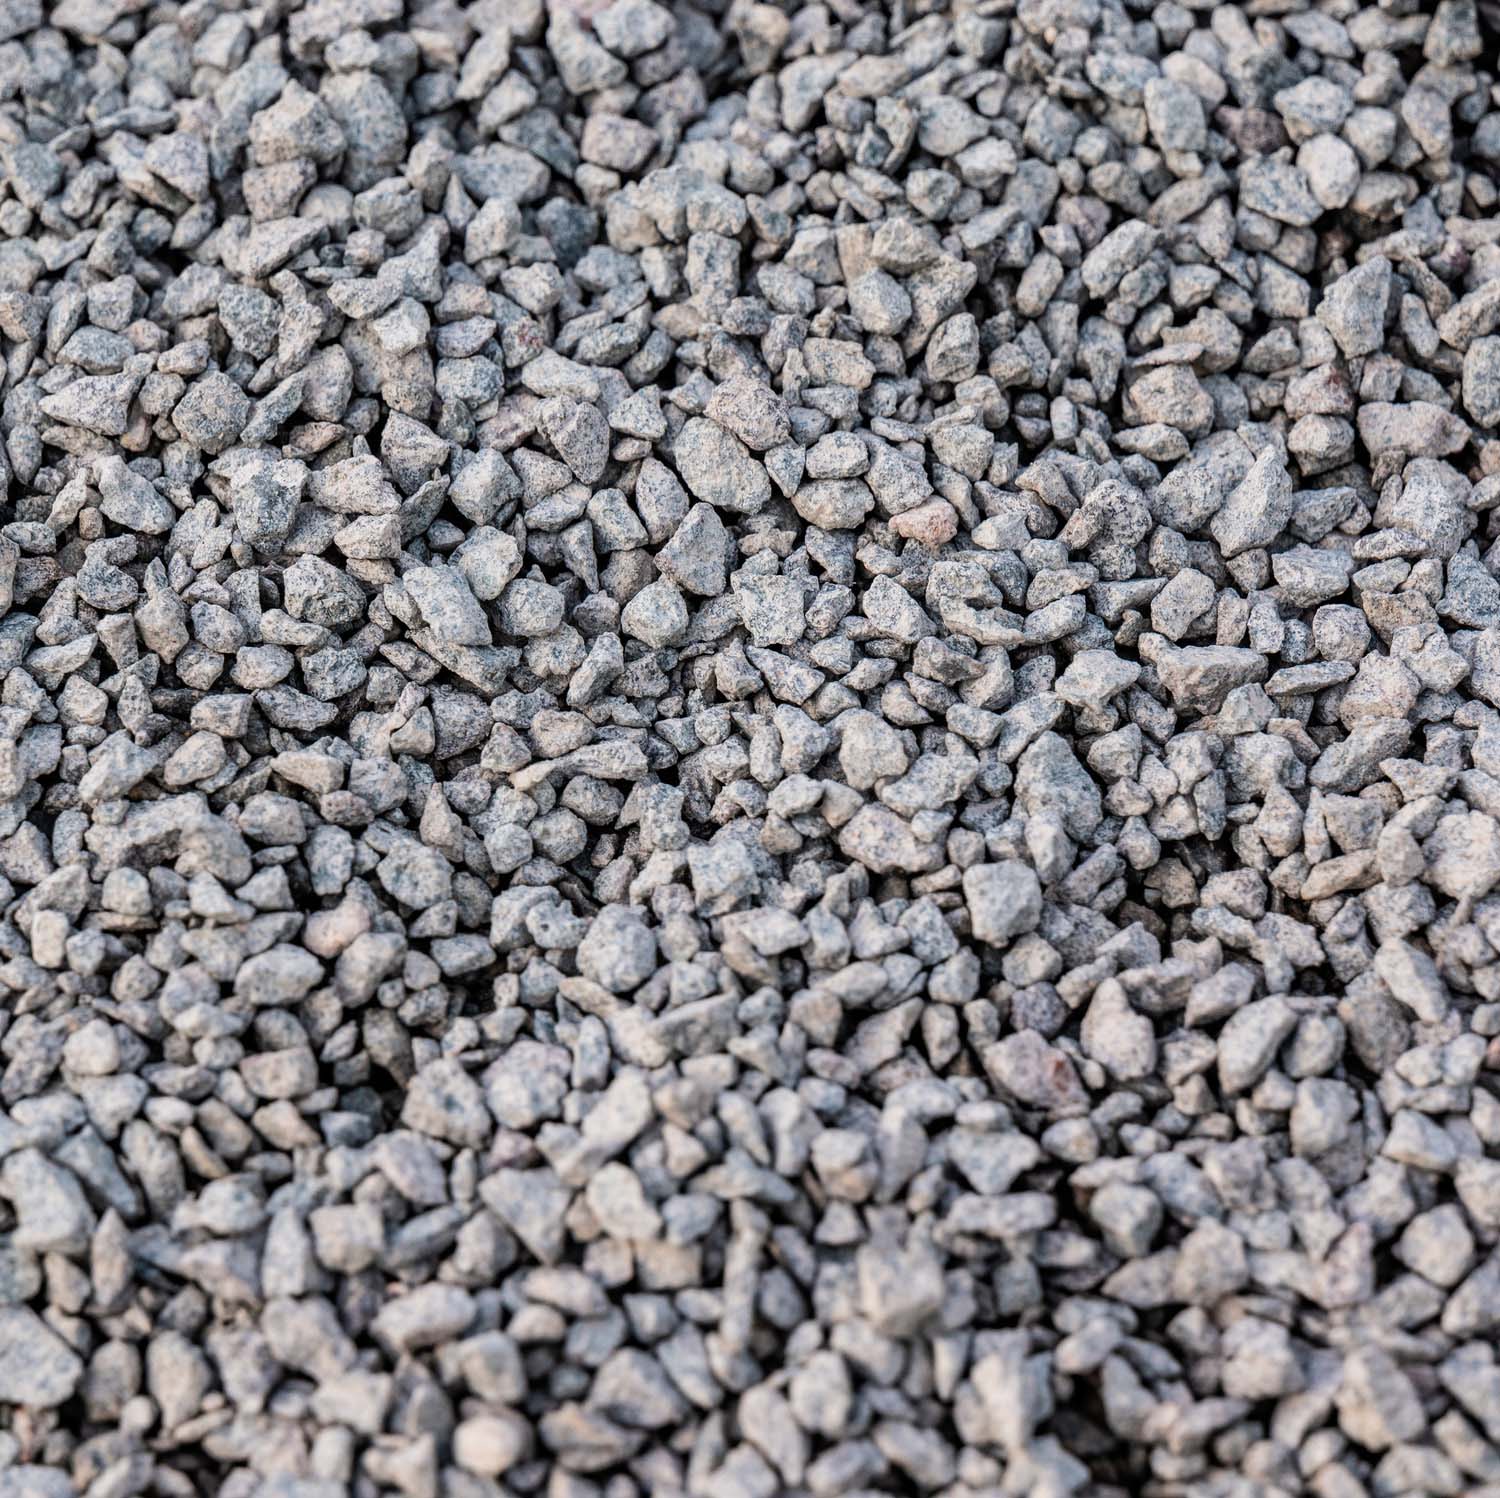 Nahaufnahme von grauem Splitt mit unregelmäßigen, kantigen Partikeln. Die Steine sind in verschiedenen Grautönen gehalten und haben eine raue, körnige Textur. Der Splitt besteht aus gebrochenem Gestein und zeigt eine gleichmäßige Verteilung der Körner.